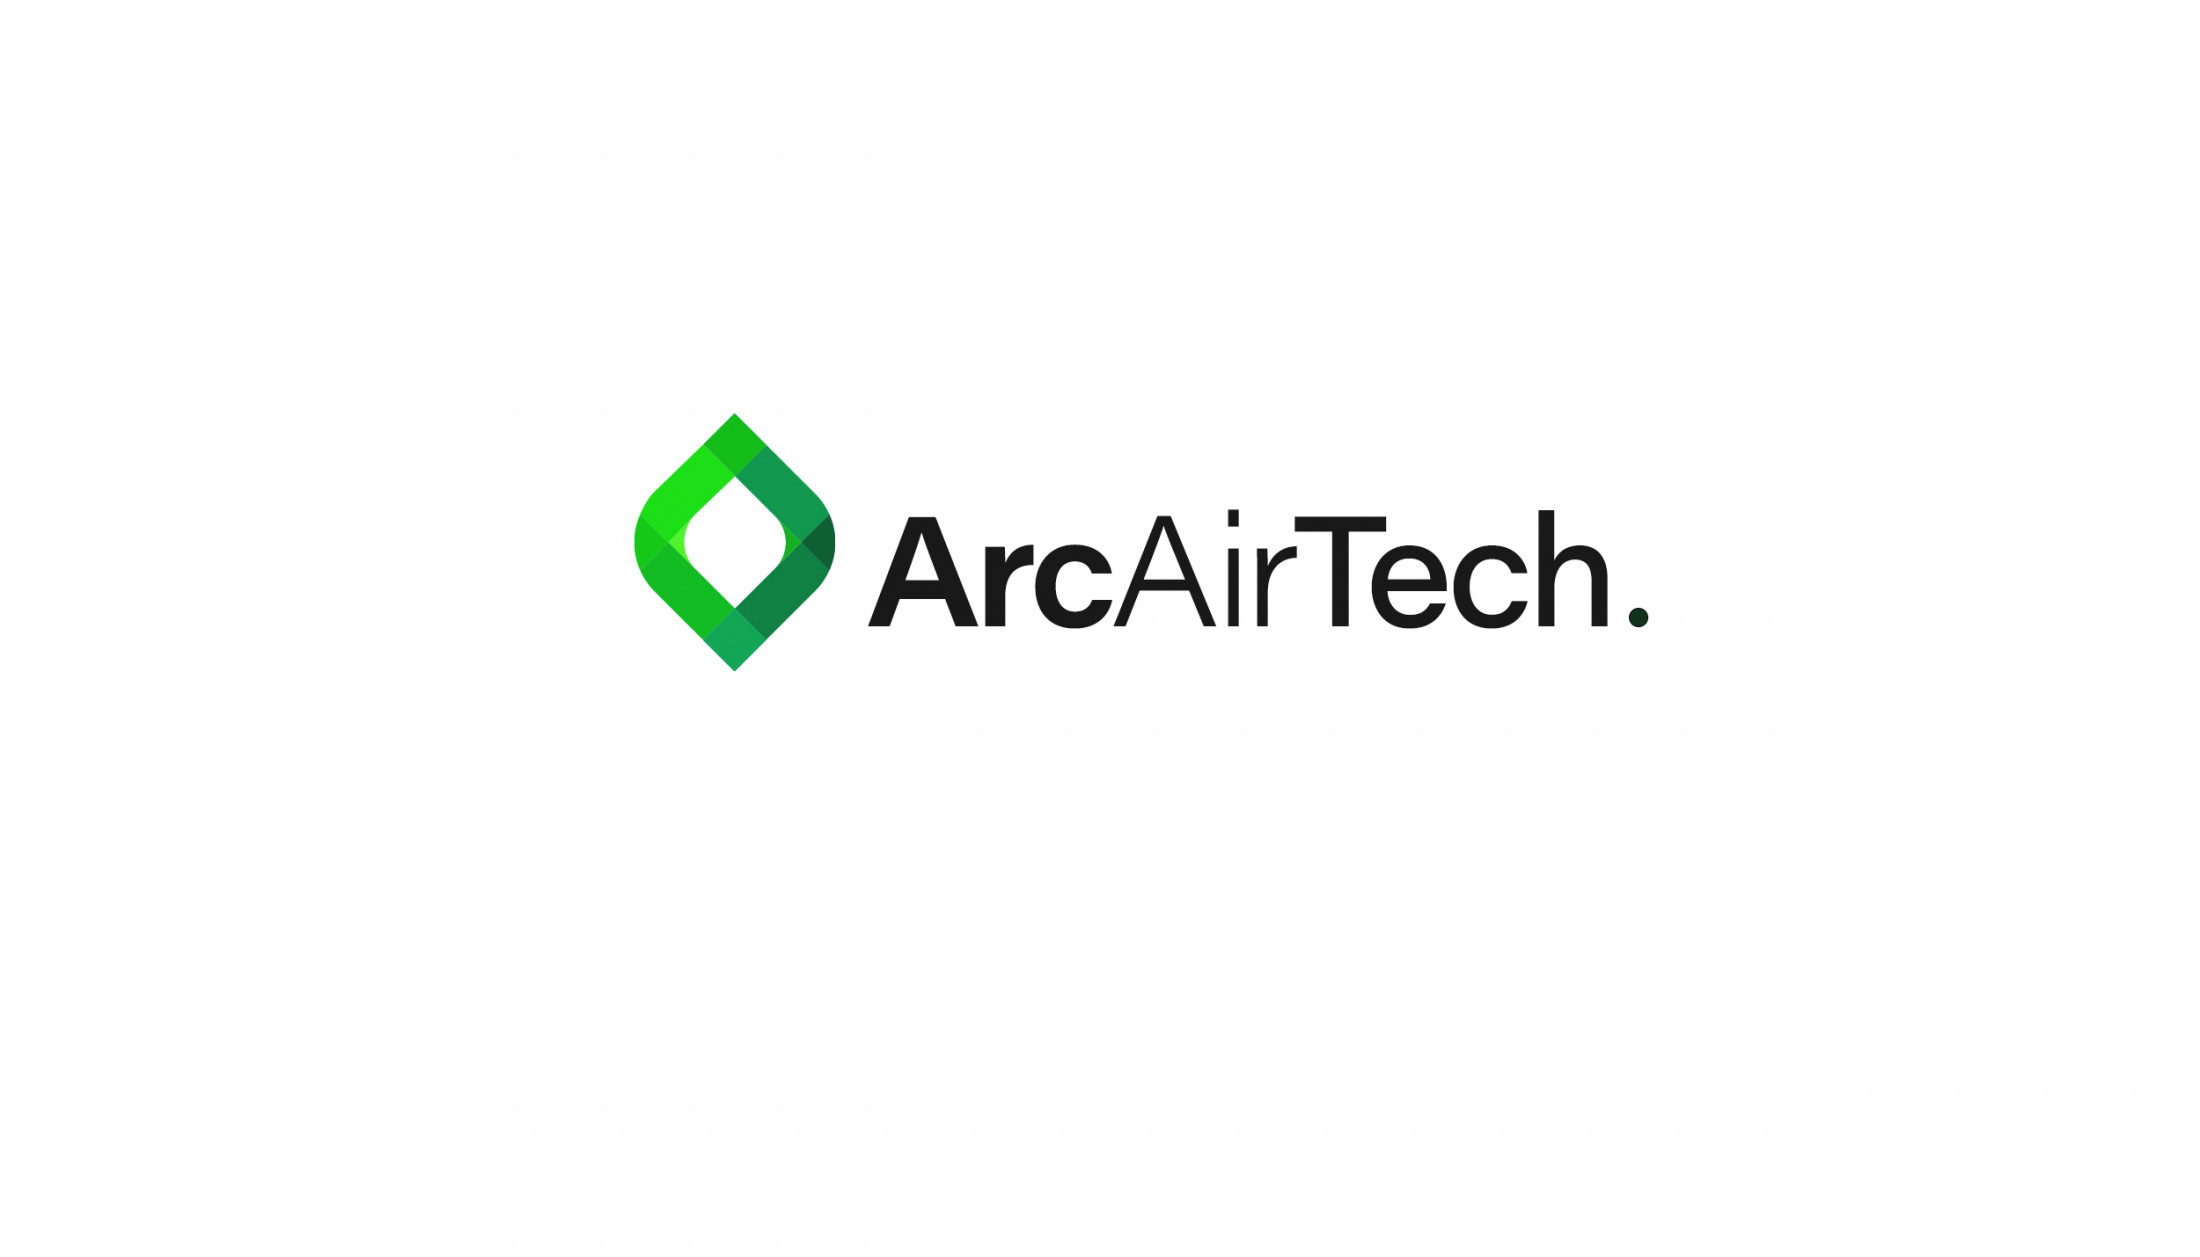 ArcAirTech